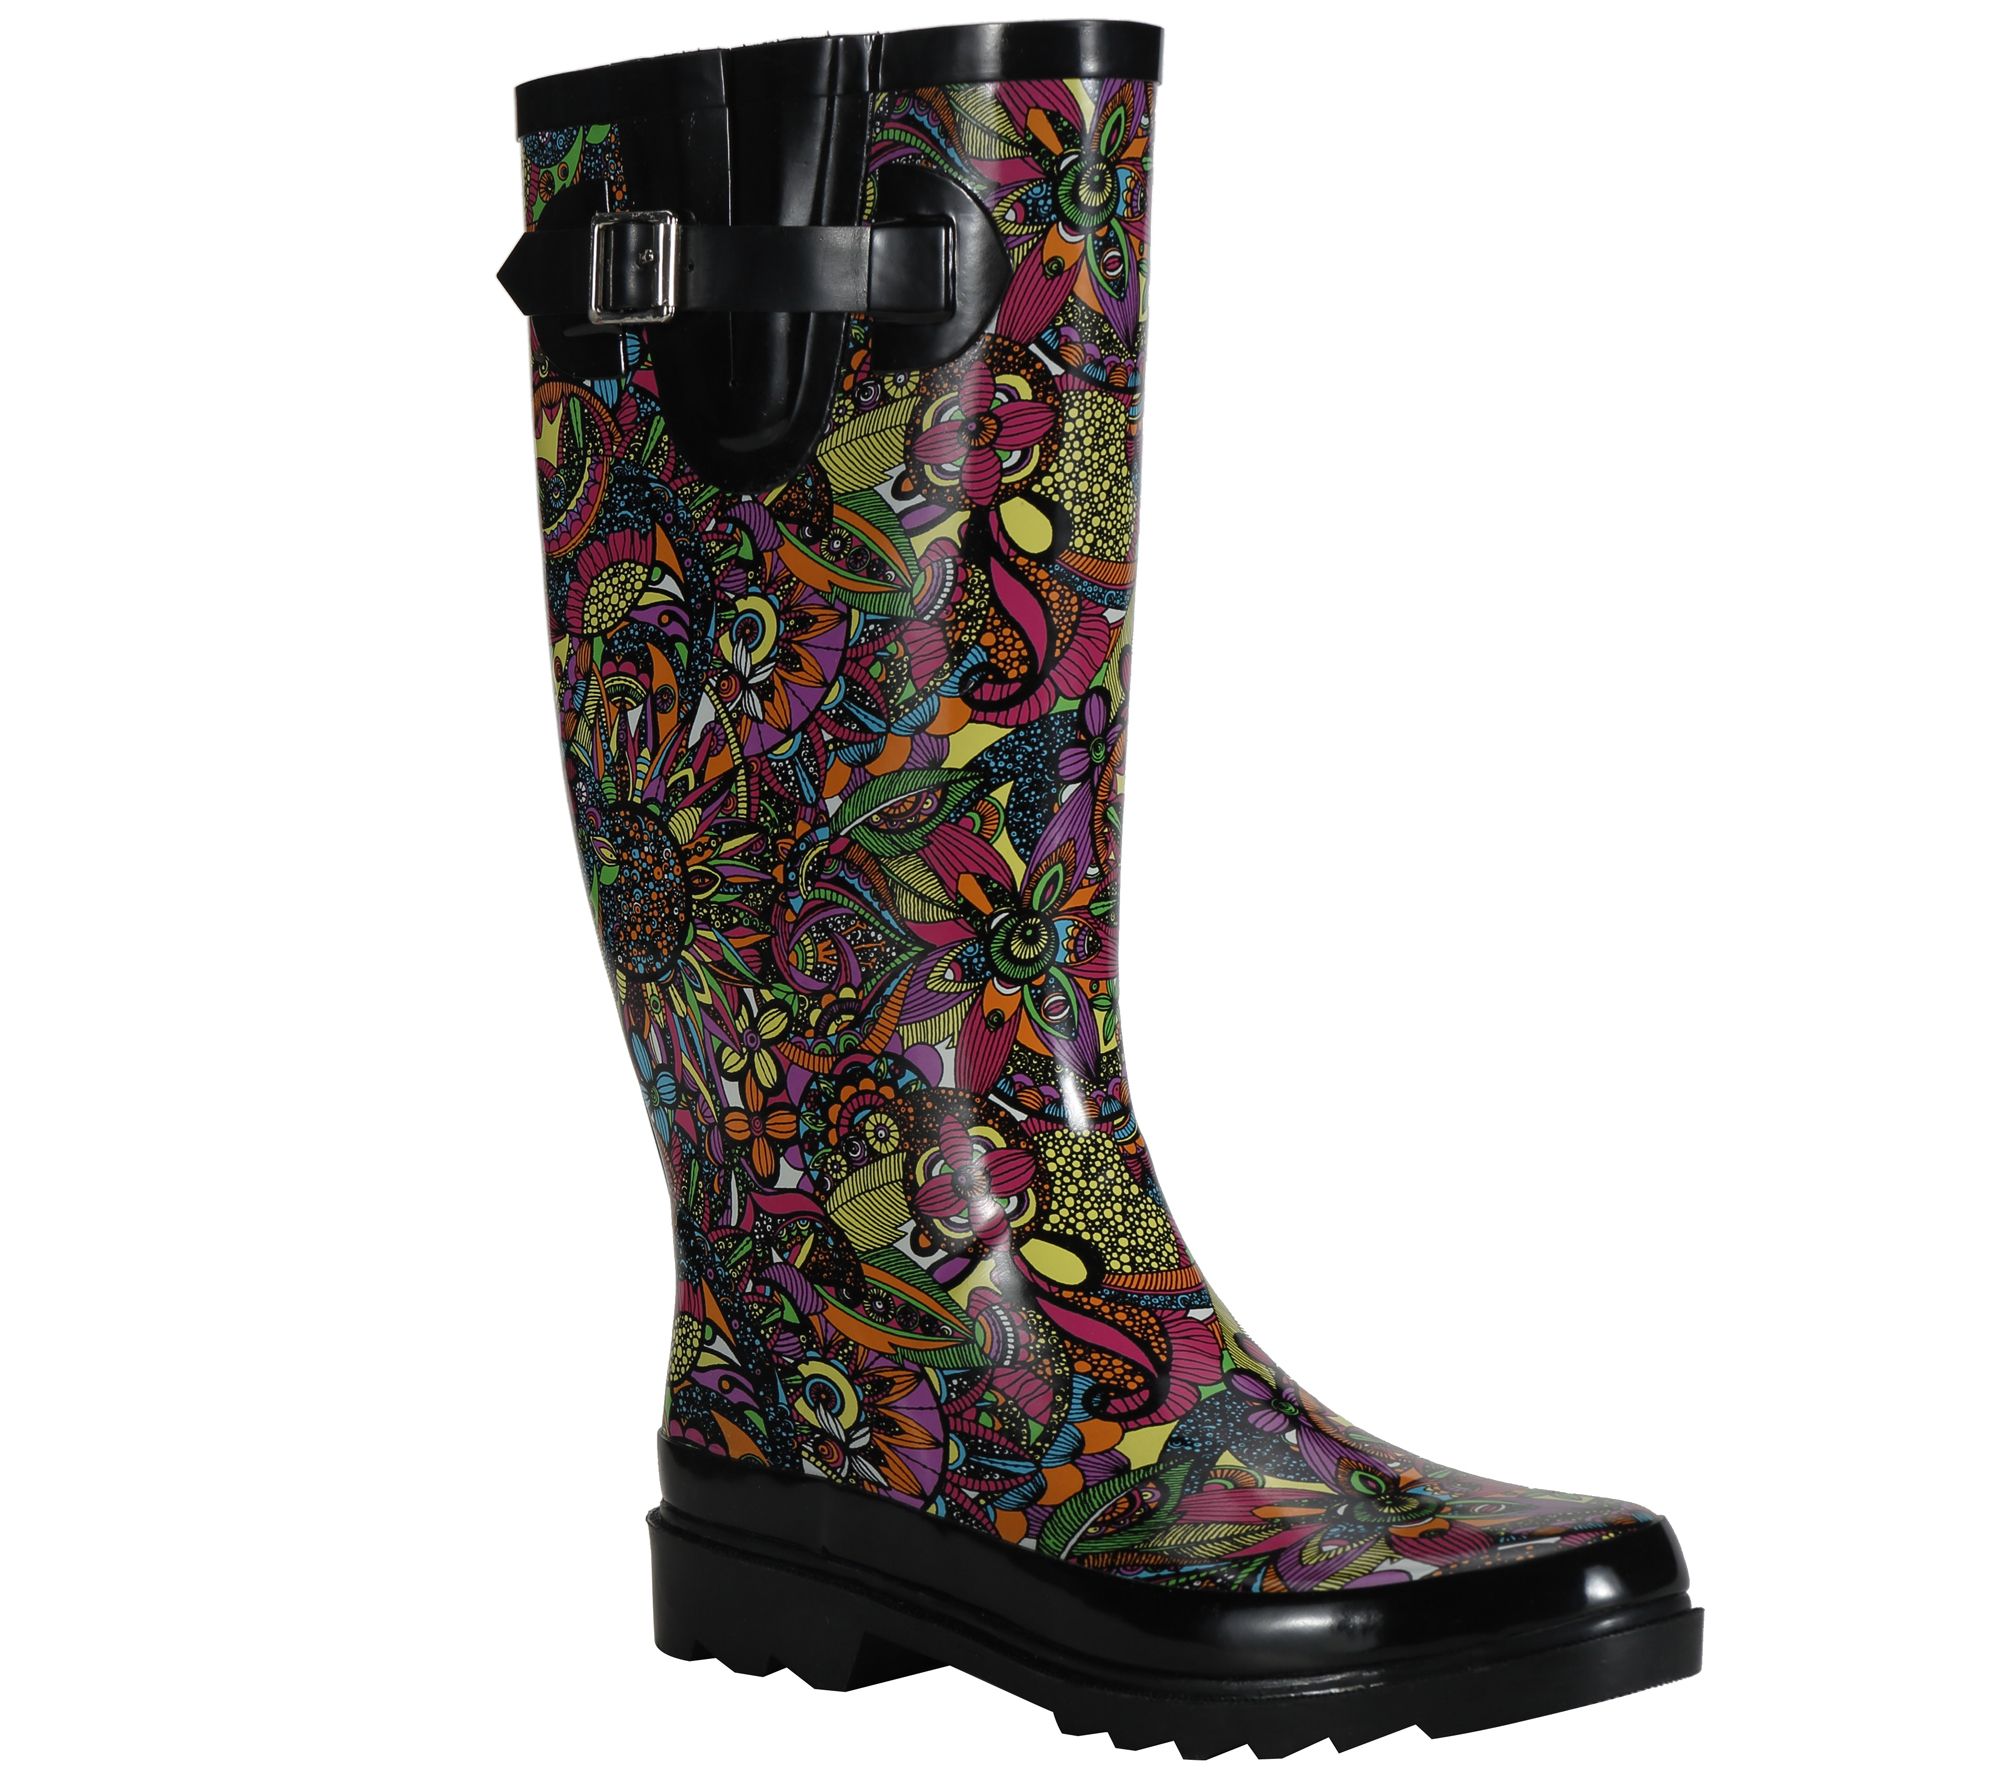 The Sak Womens Sakroots Ringo Midi Rainboot Rain Boot 